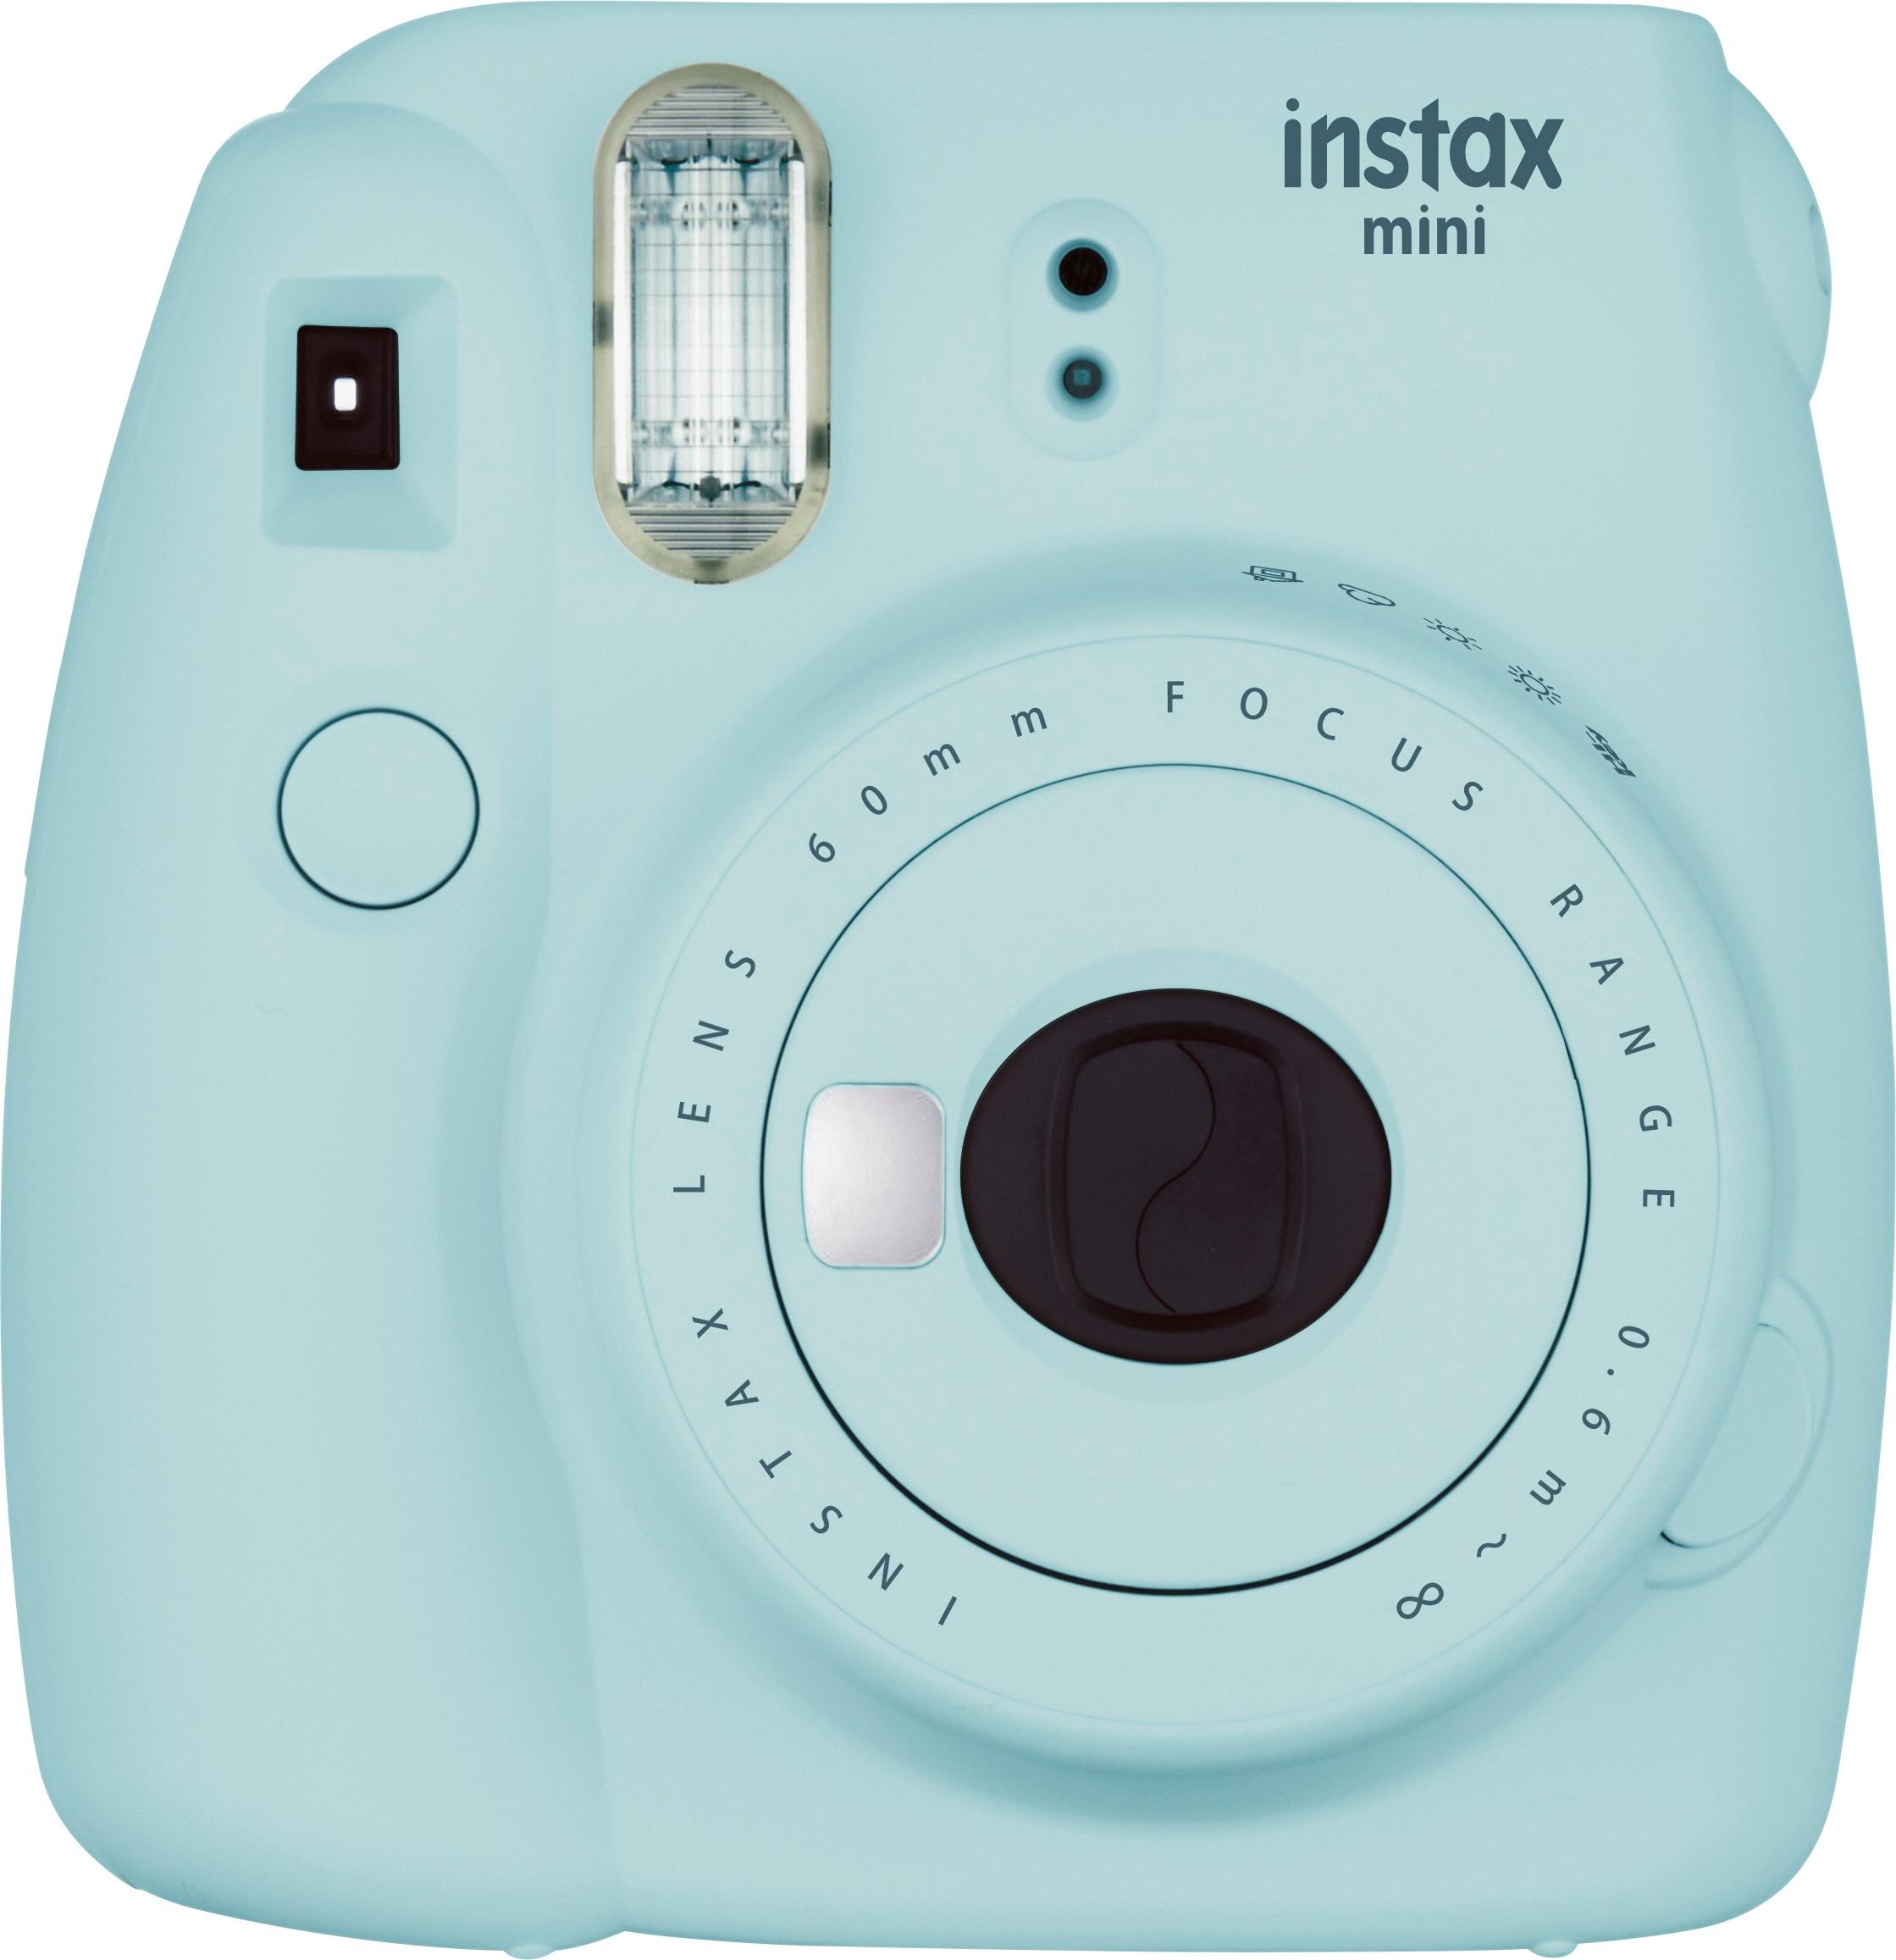 Doorweekt Sociale wetenschappen Koopje Best Buy: Fujifilm instax mini 9 Instant Film Camera Ice Blue 16550643